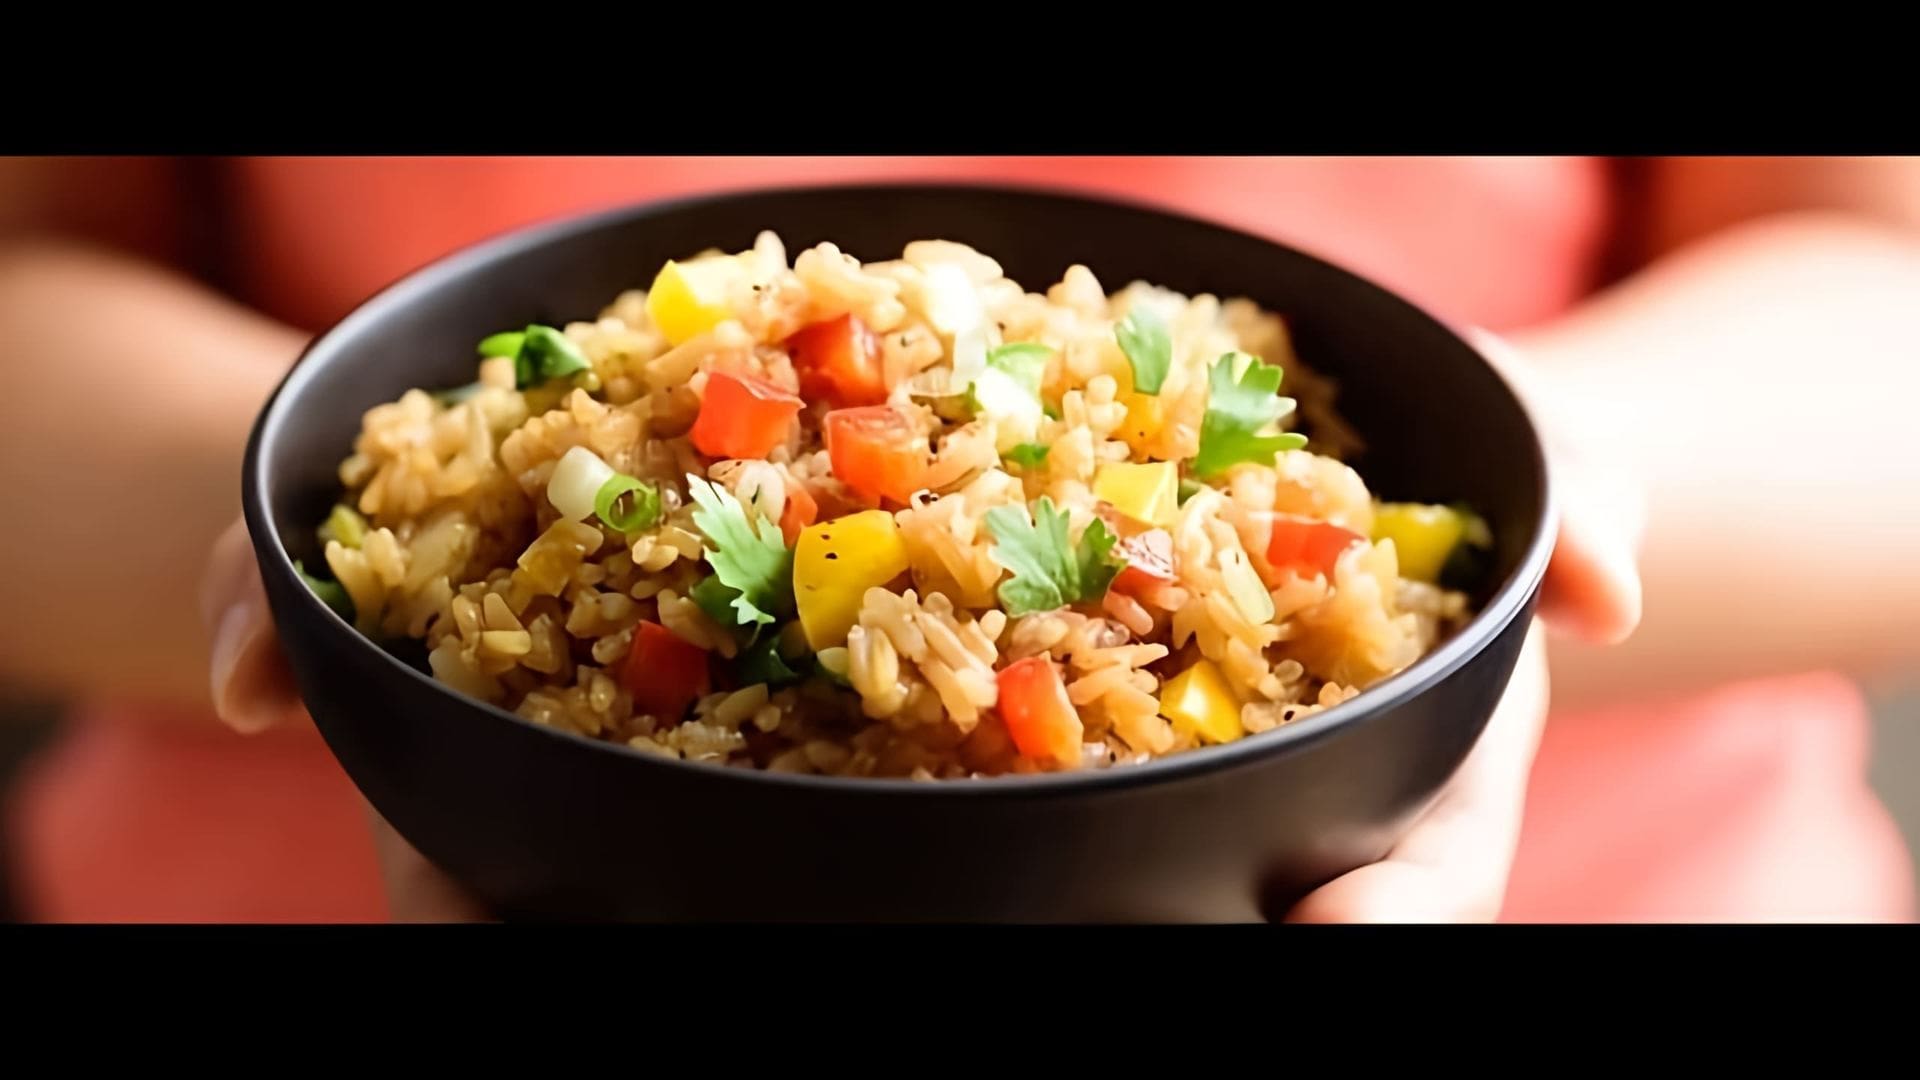 В этом видео демонстрируется рецепт тайского жареного риса с ананасом